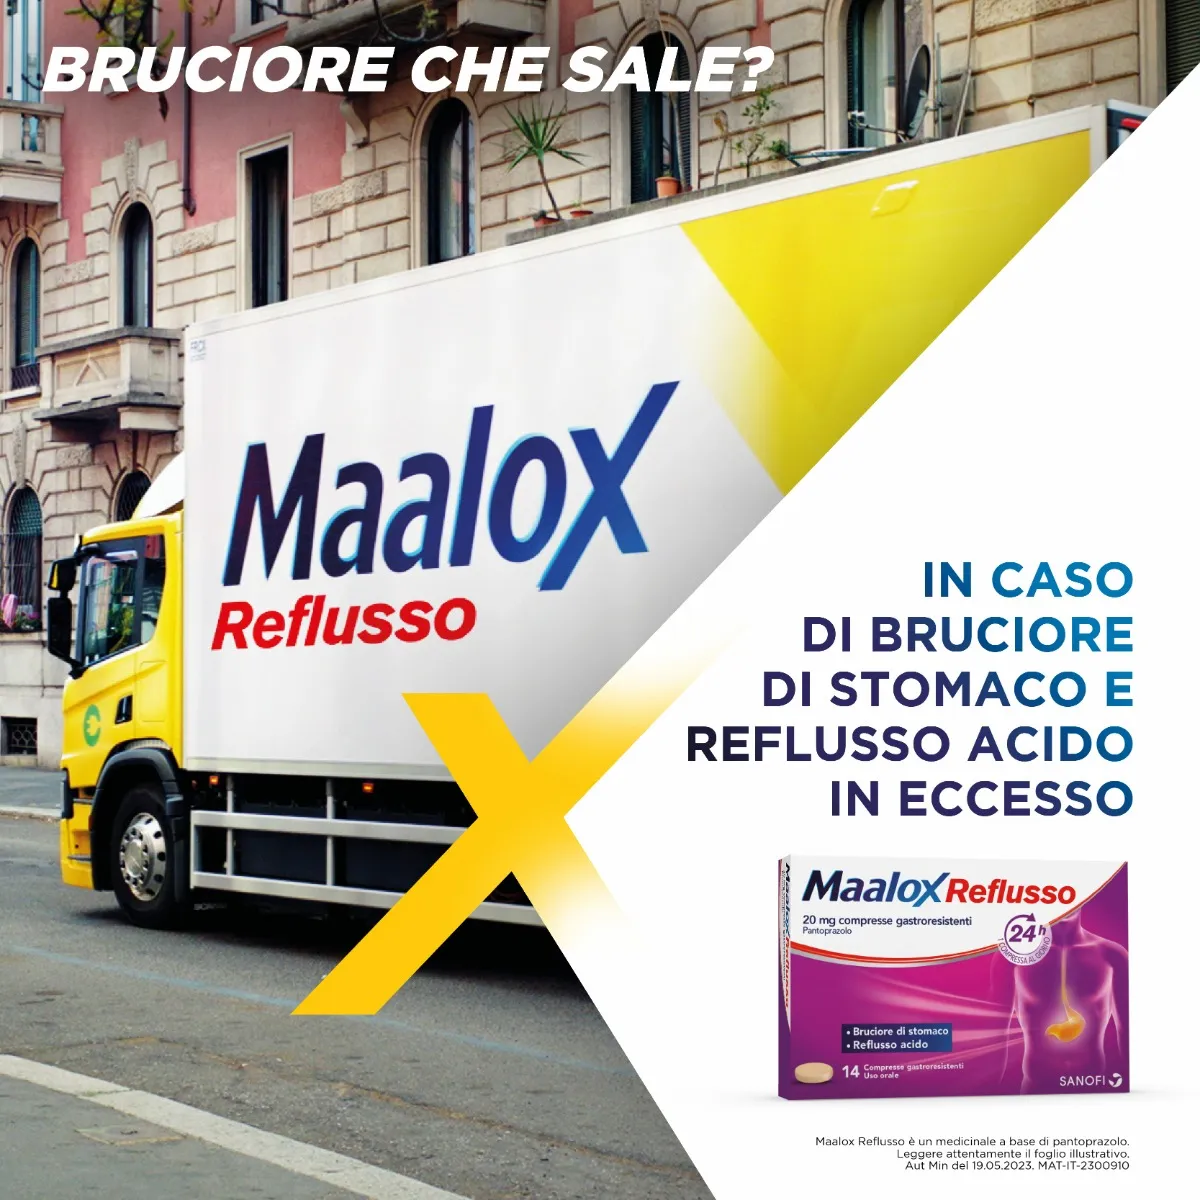 Maalox Reflusso 20 mg 14 Compresse Azione Anti-Reflusso